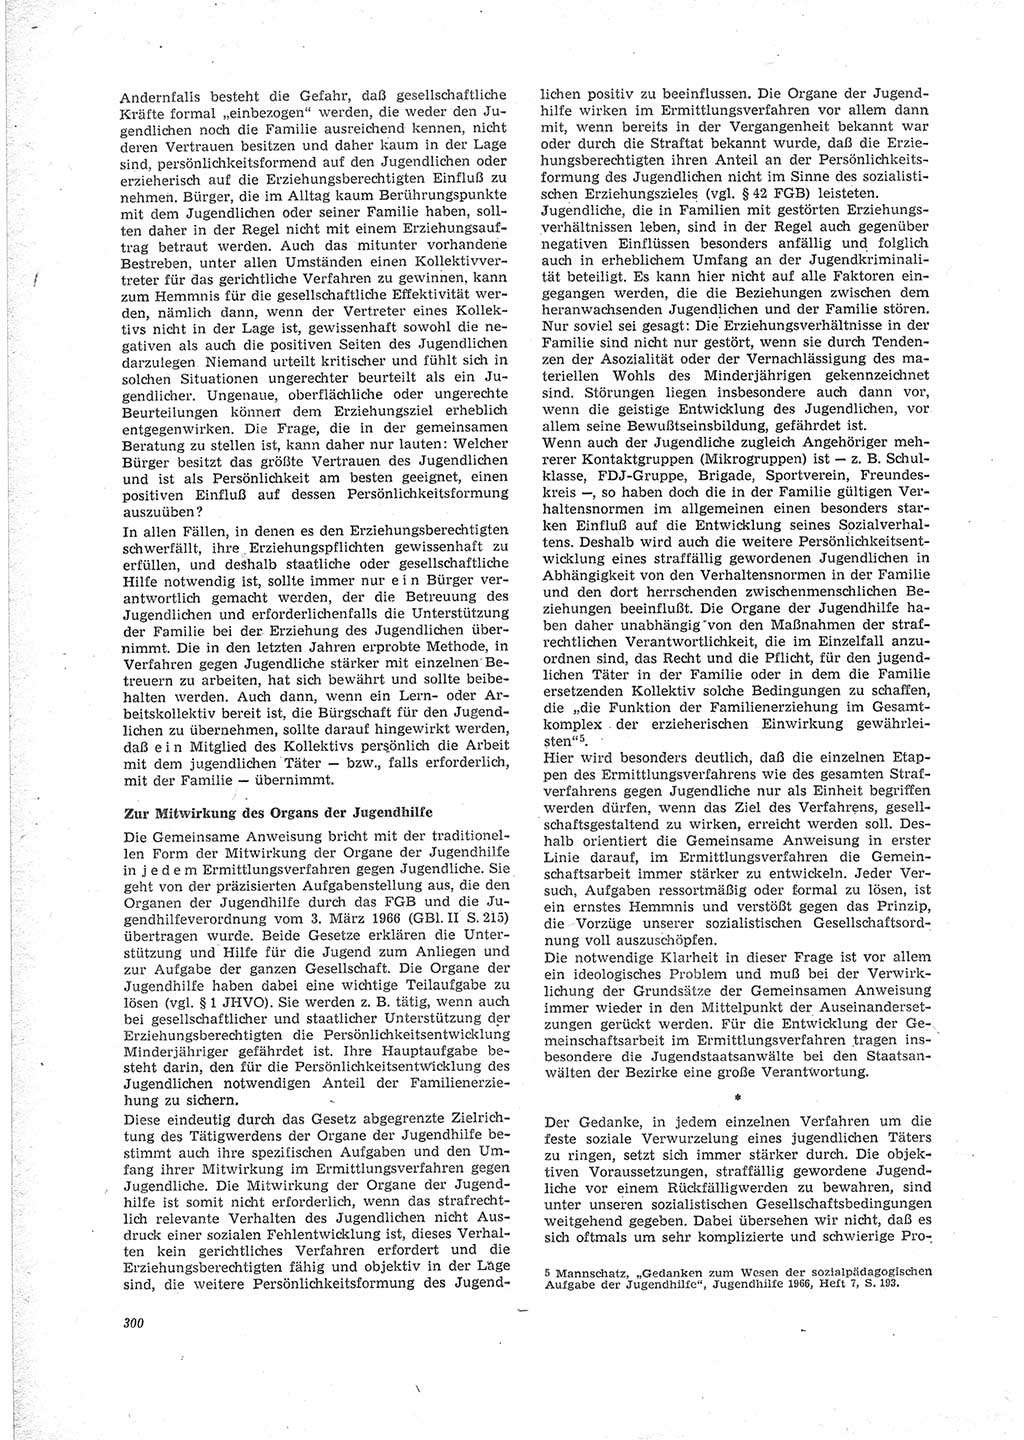 Neue Justiz (NJ), Zeitschrift für Recht und Rechtswissenschaft [Deutsche Demokratische Republik (DDR)], 23. Jahrgang 1969, Seite 300 (NJ DDR 1969, S. 300)